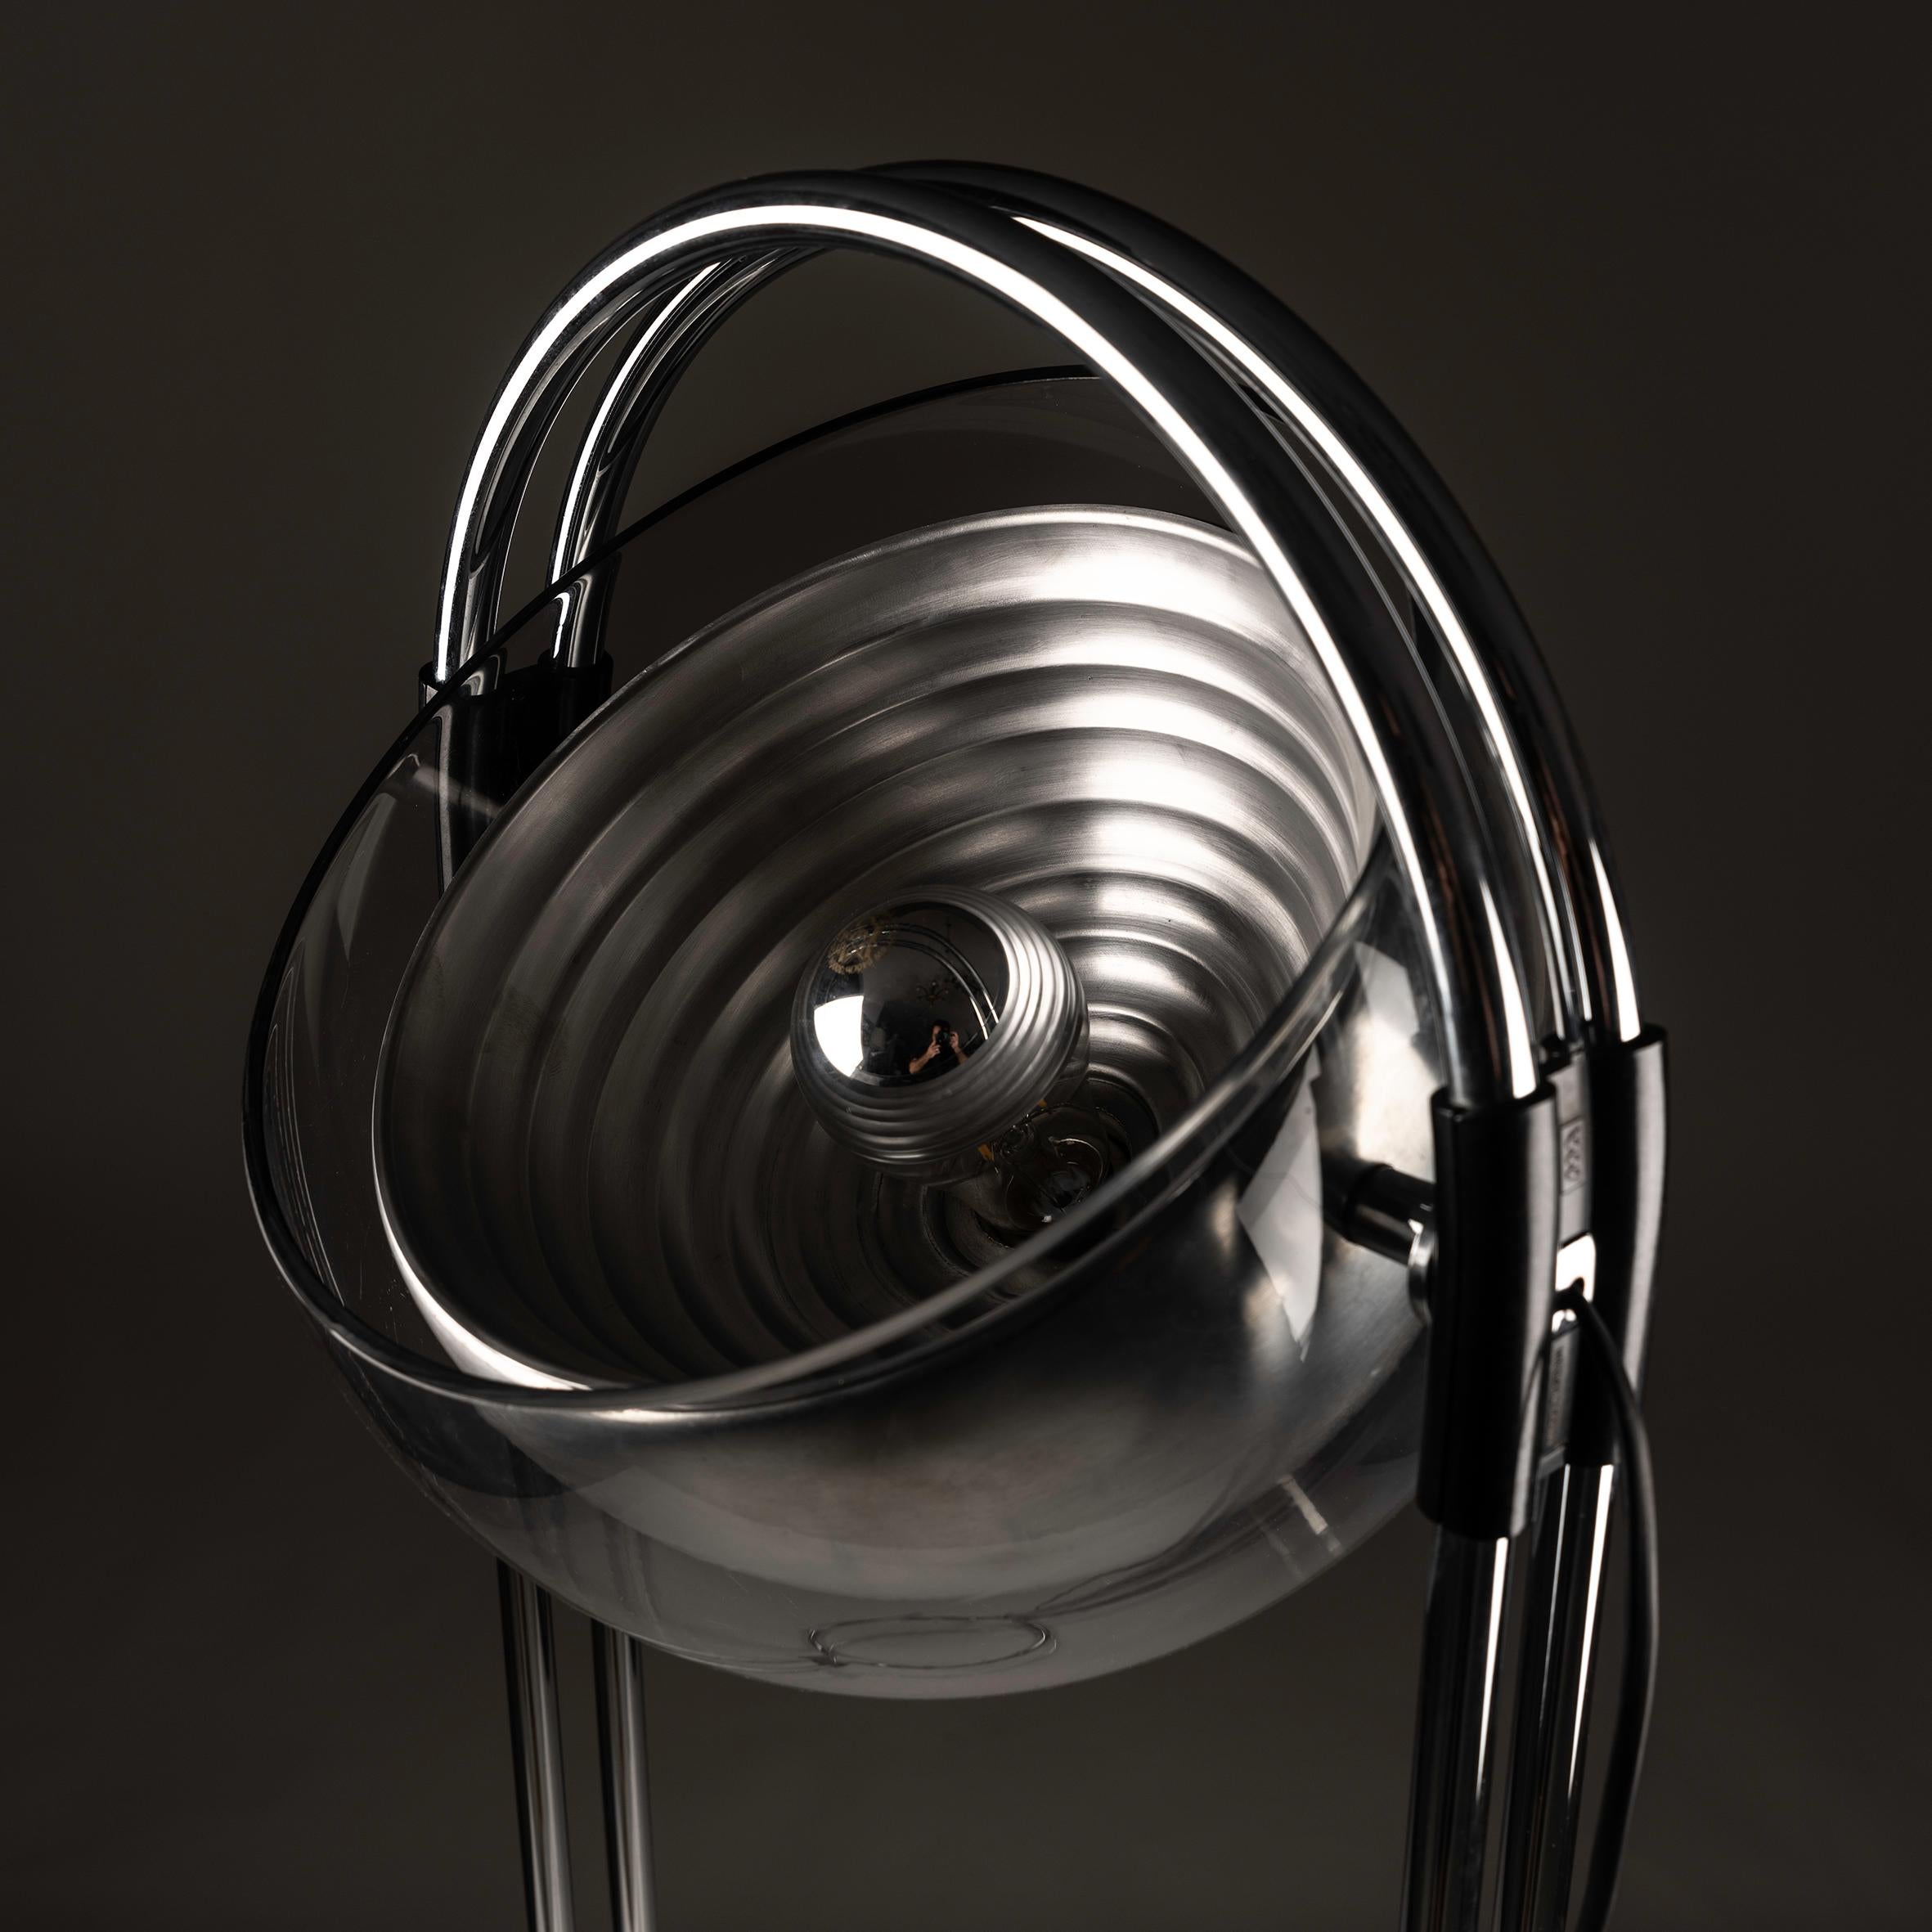 Embarquez pour un voyage rétro-futuriste avec le lampadaire espagnol Space Age d'André Ricard pour Metalarte, une icône du design des années 1970. L'éclat visionnaire de Ricard se déploie dans la silhouette avant-gardiste de la lampe, fusion